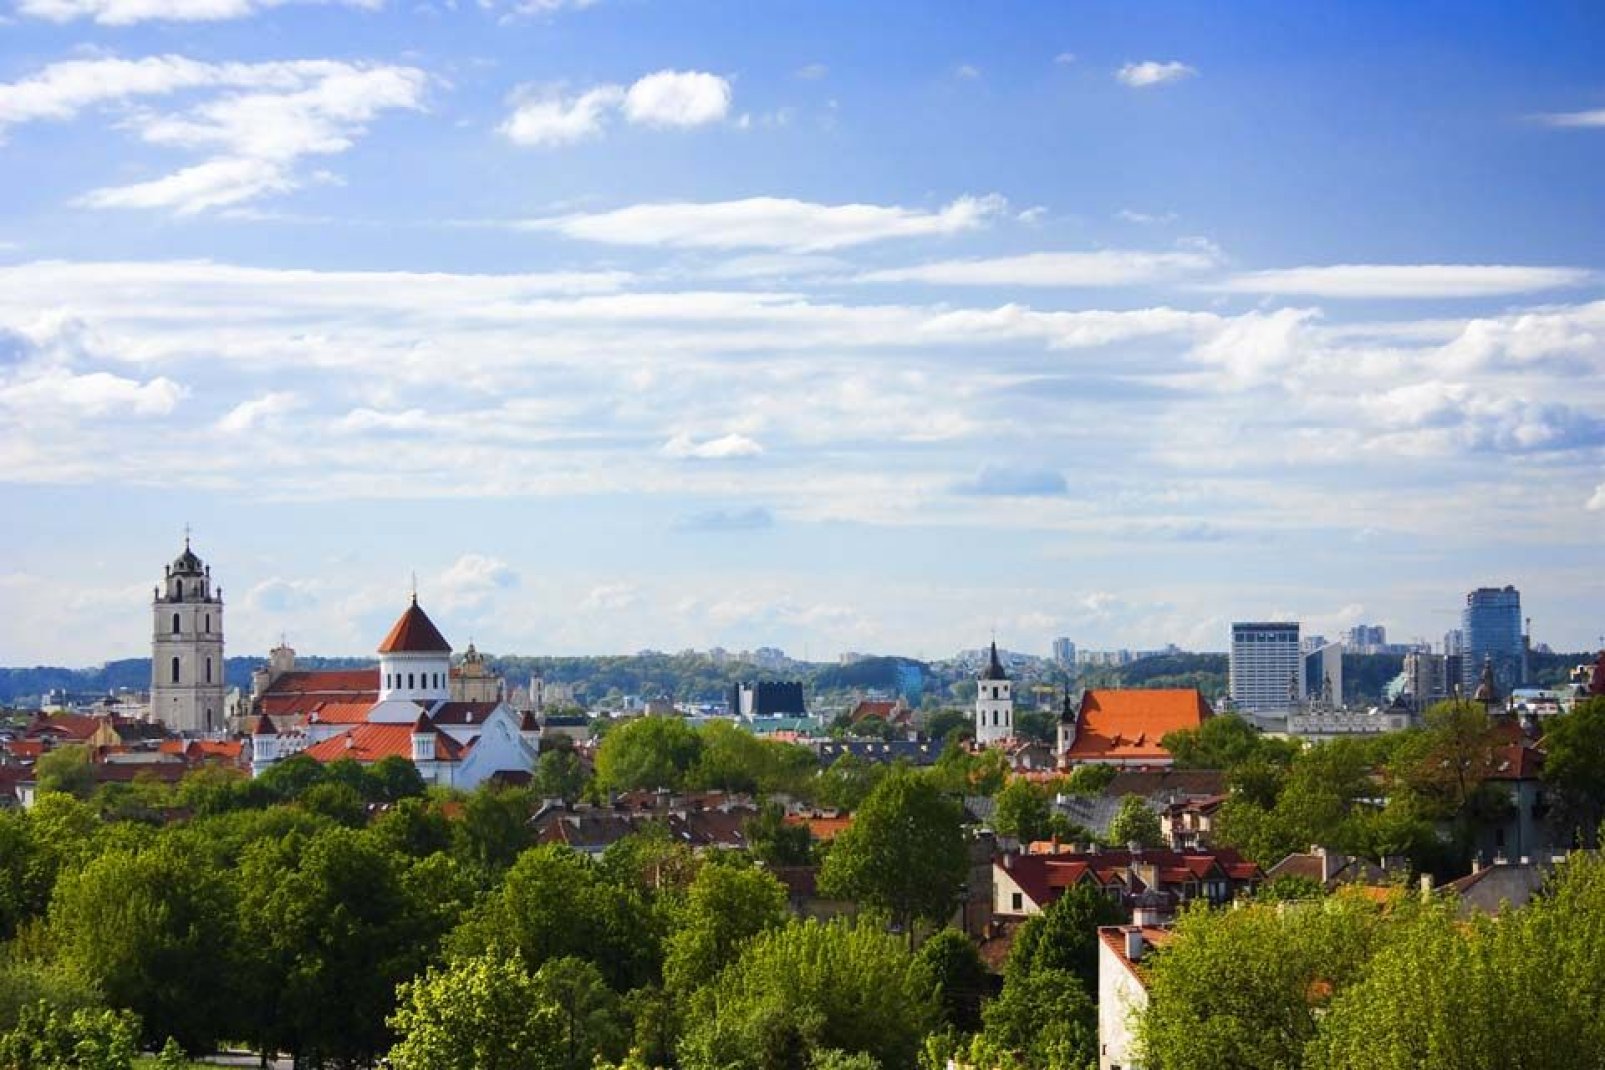 Vilnius ist eine kulturelle Schnittstelle verschiedener Kulturen und von zahlreichen gegensätzlichen Baustilen geprägt.